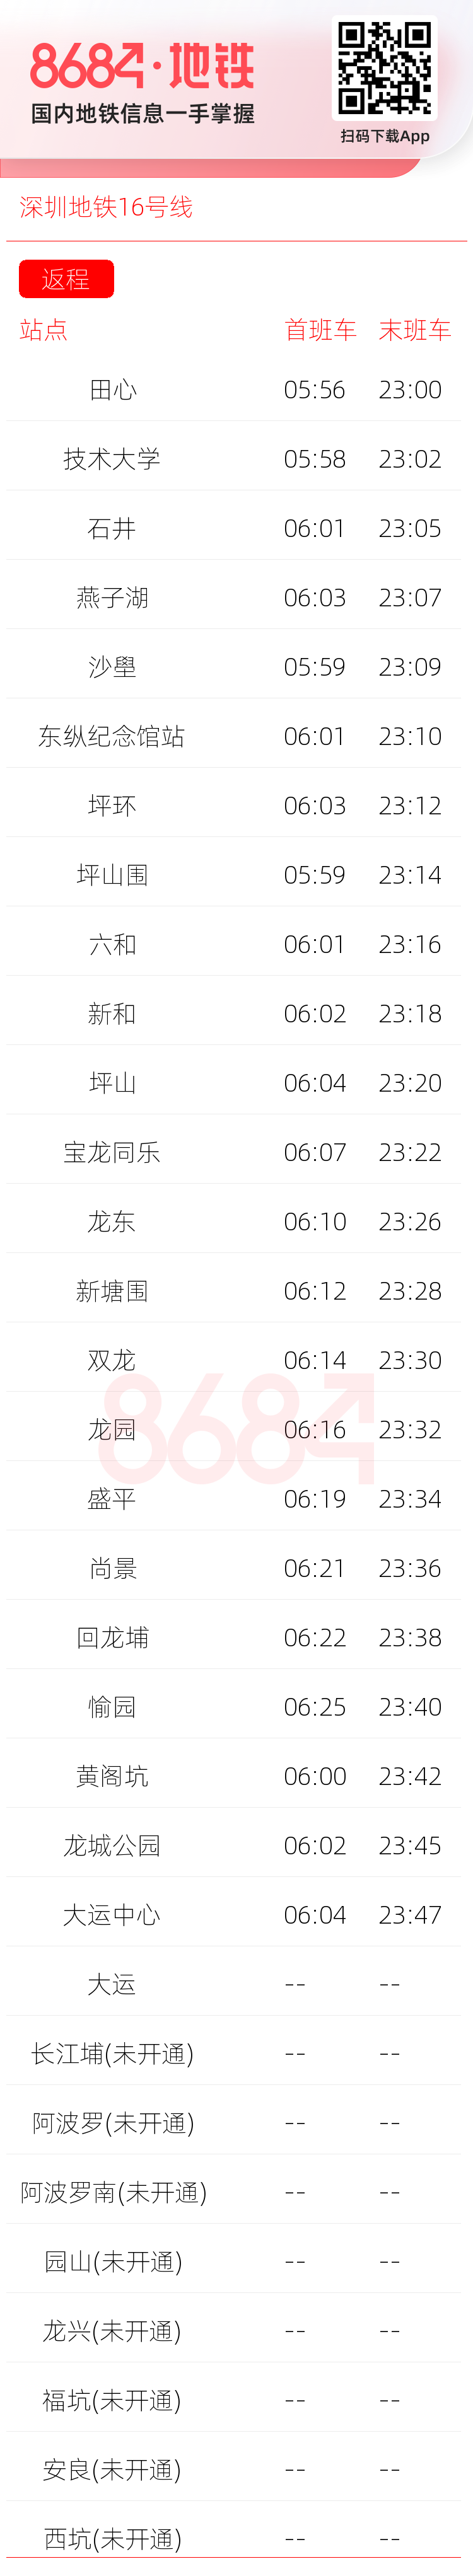 深圳地铁16号线运营时间表